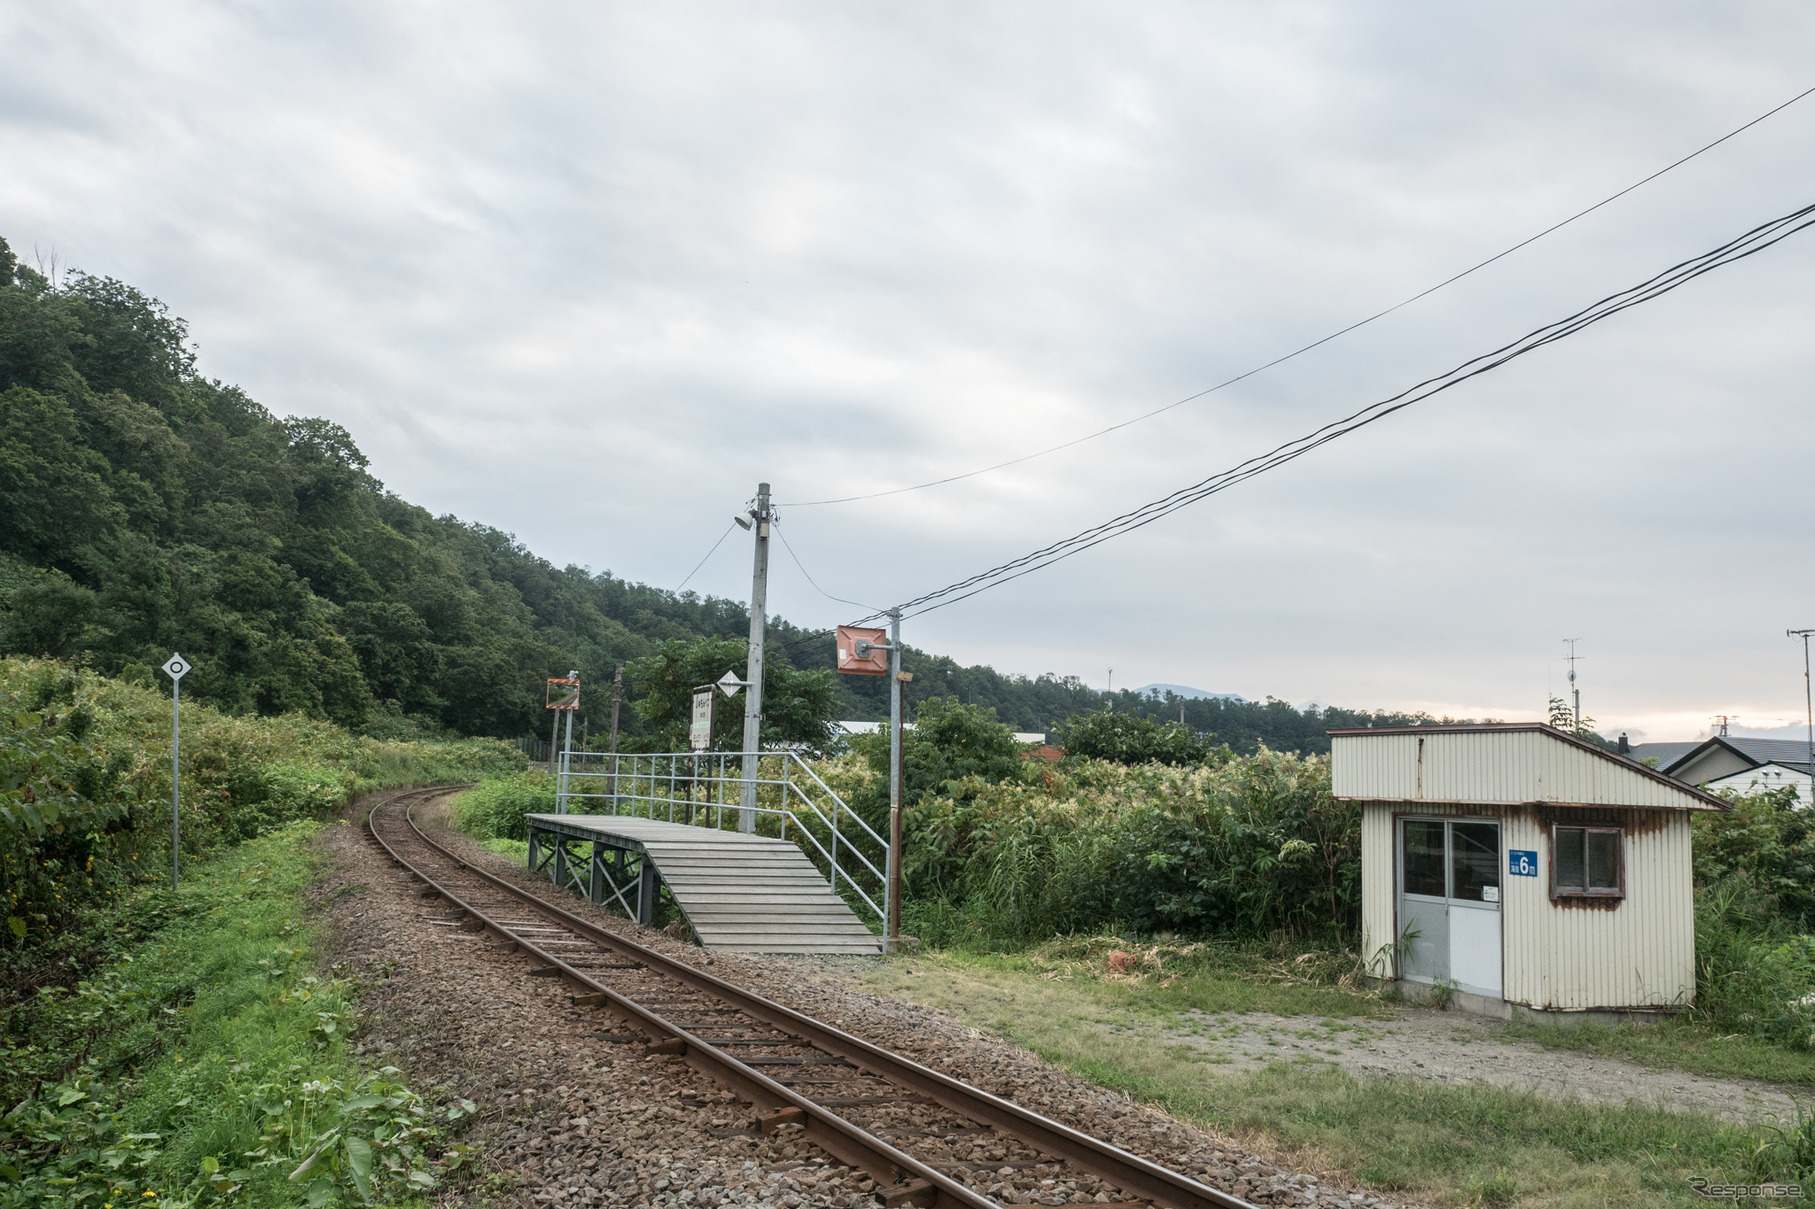 阿分駅と同じく板張りの短いホームがあるだけの朱文別（しゅもんべつ）駅も1人以下の平均乗降客数。